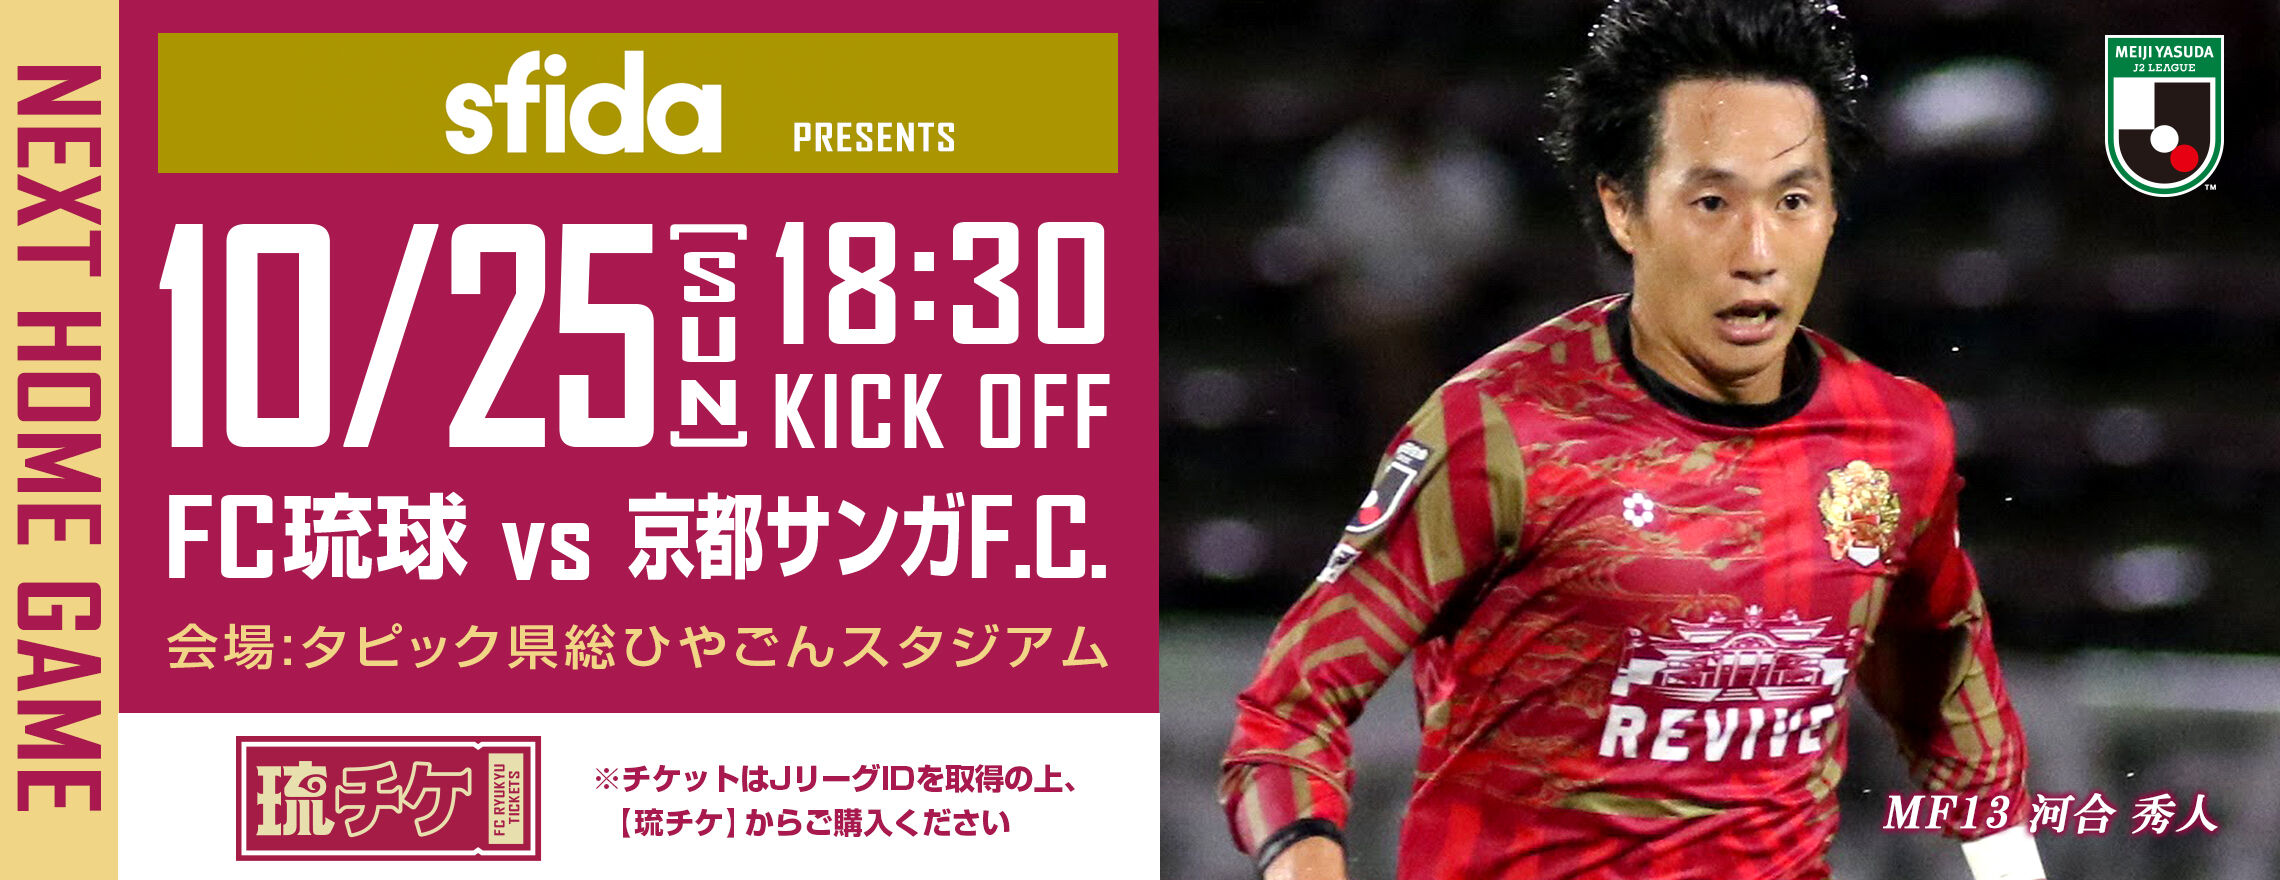 Fc琉球 10月25日京都サンガf C 戦で Sfida スペシャルマッチデー を開催 サッカー なんでもニュース